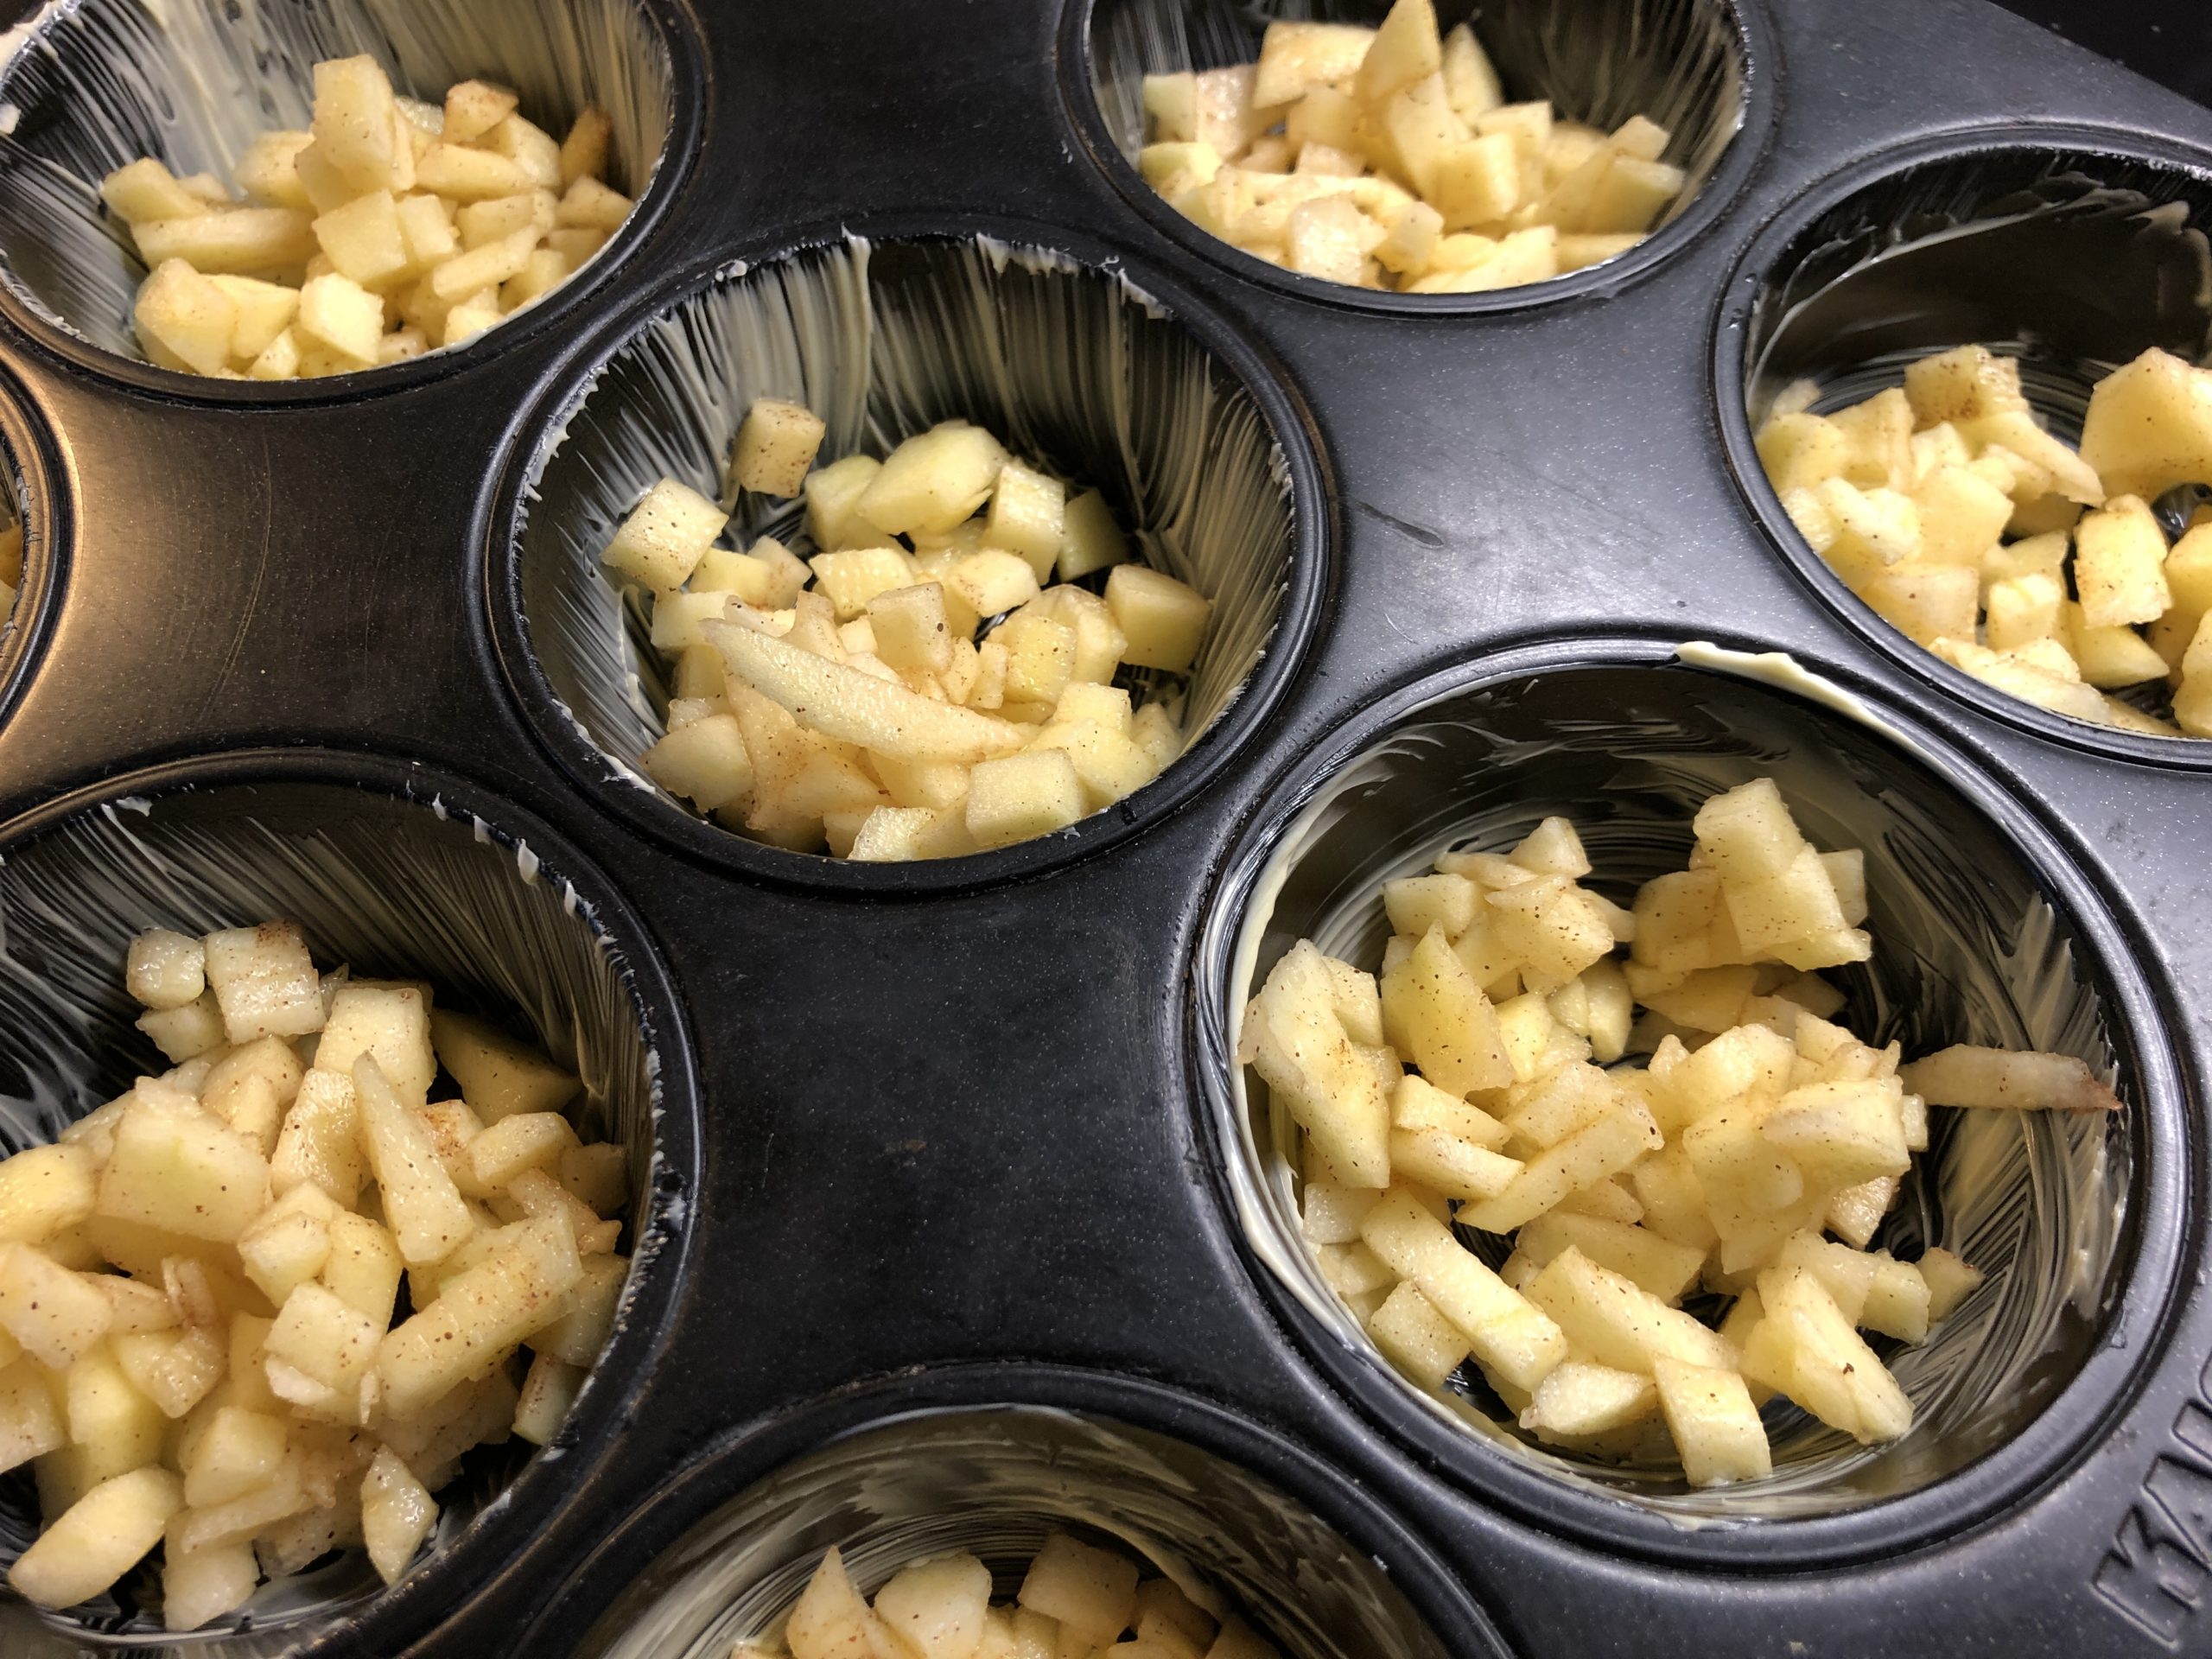 Bild zum Schritt 21 für das Bastel- und DIY-Abenteuer für Kinder: 'Zuerst wird die Apfelmasse in die Muffin-Formen gefüllt.'